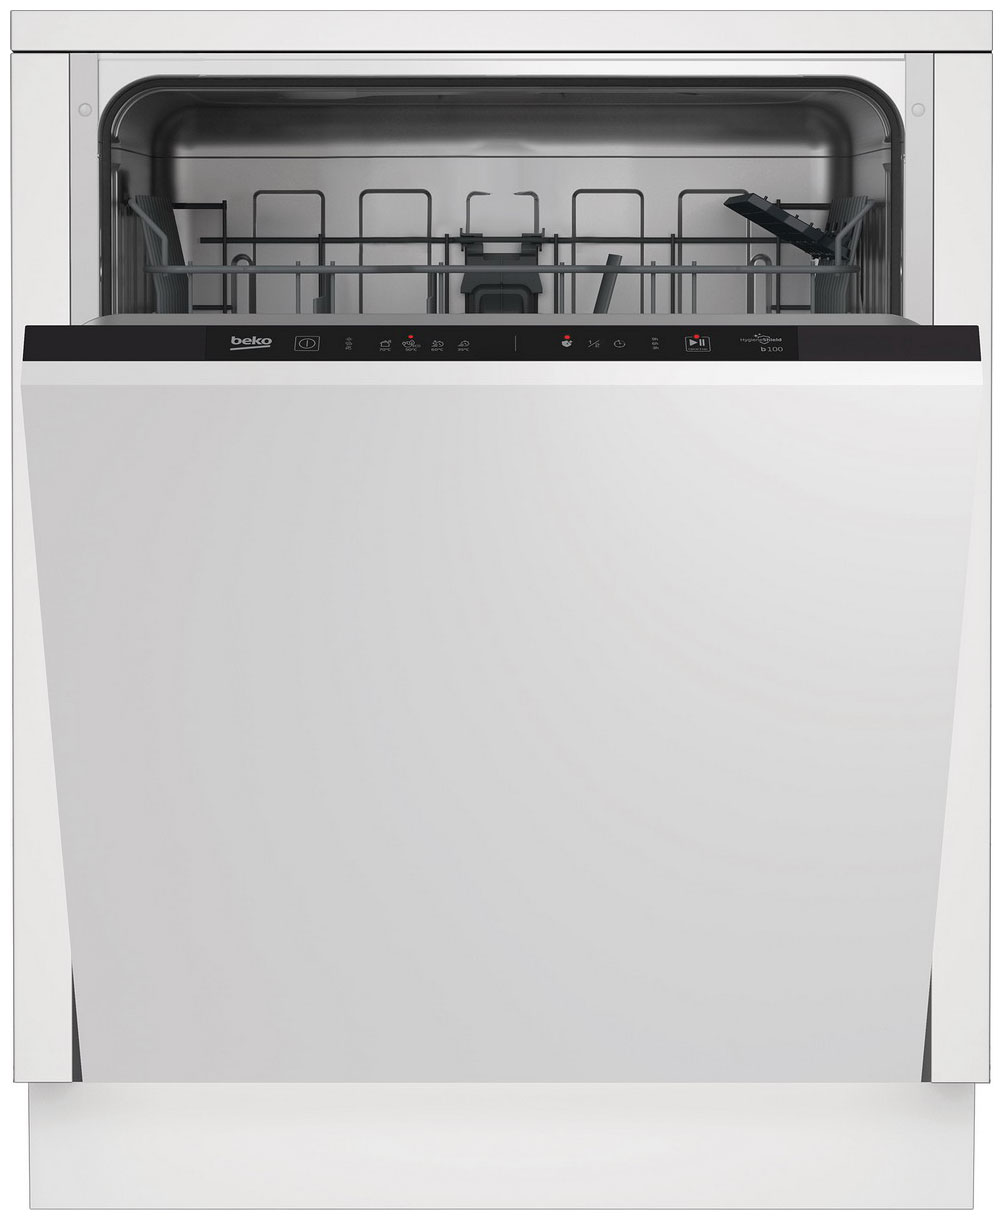 Встраиваемая посудомоечная машина Beko BDIN14320 встраиваемая посудомоечная машина beko bdin16520